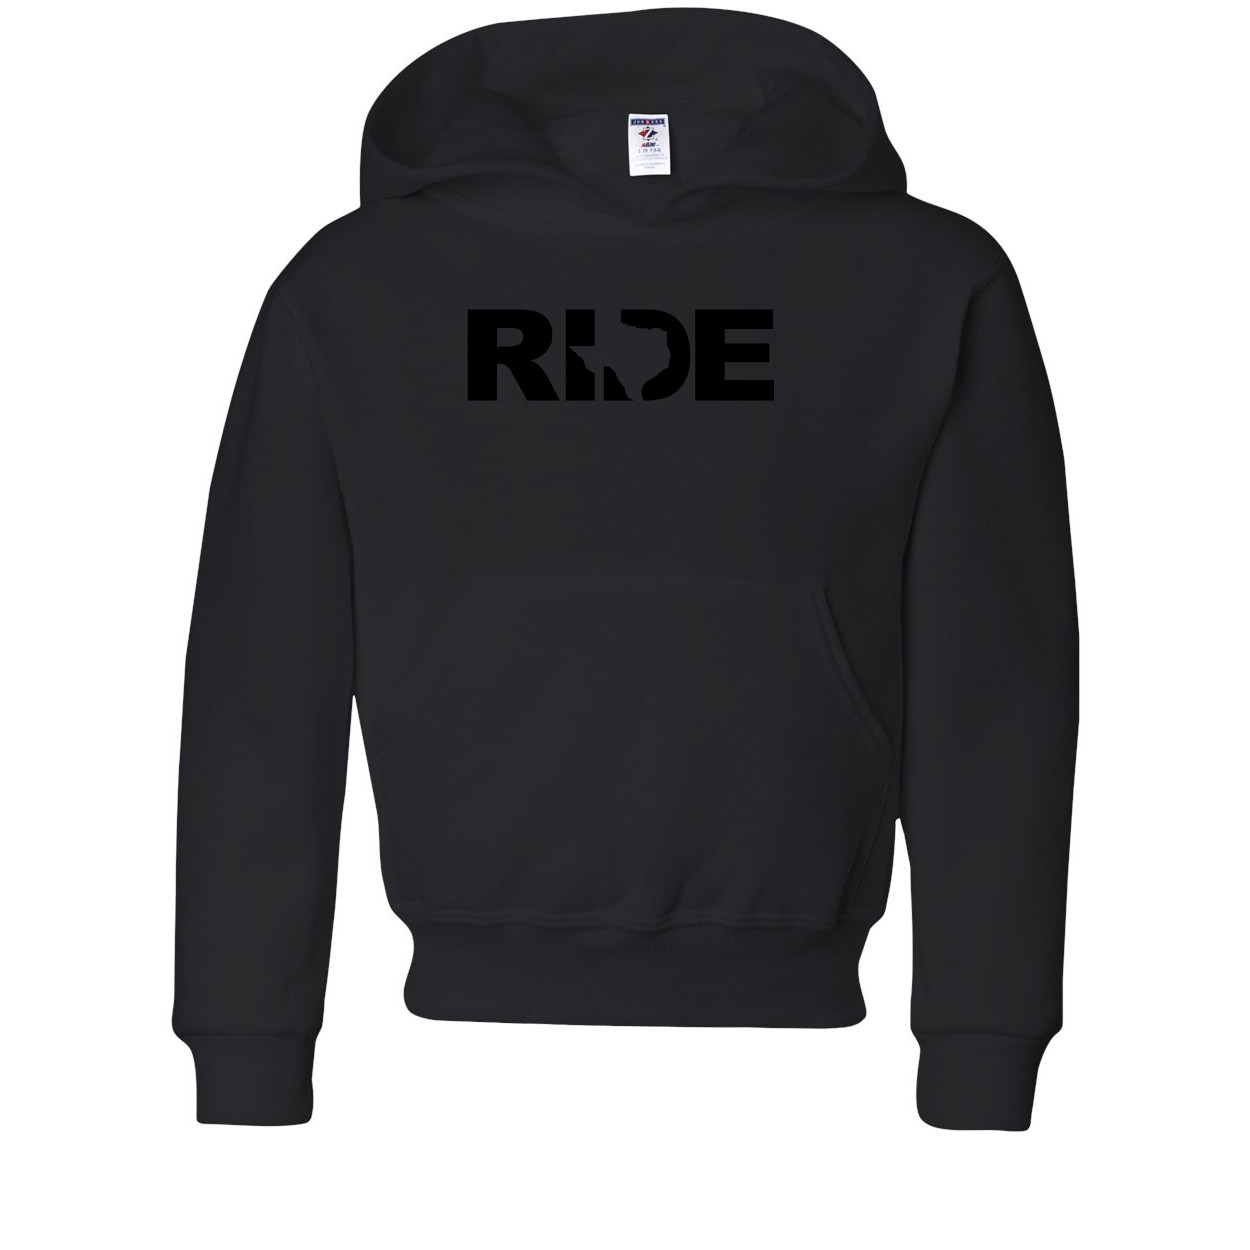 Ride Texas Classic Youth Sweatshirt Black (Black Logo)